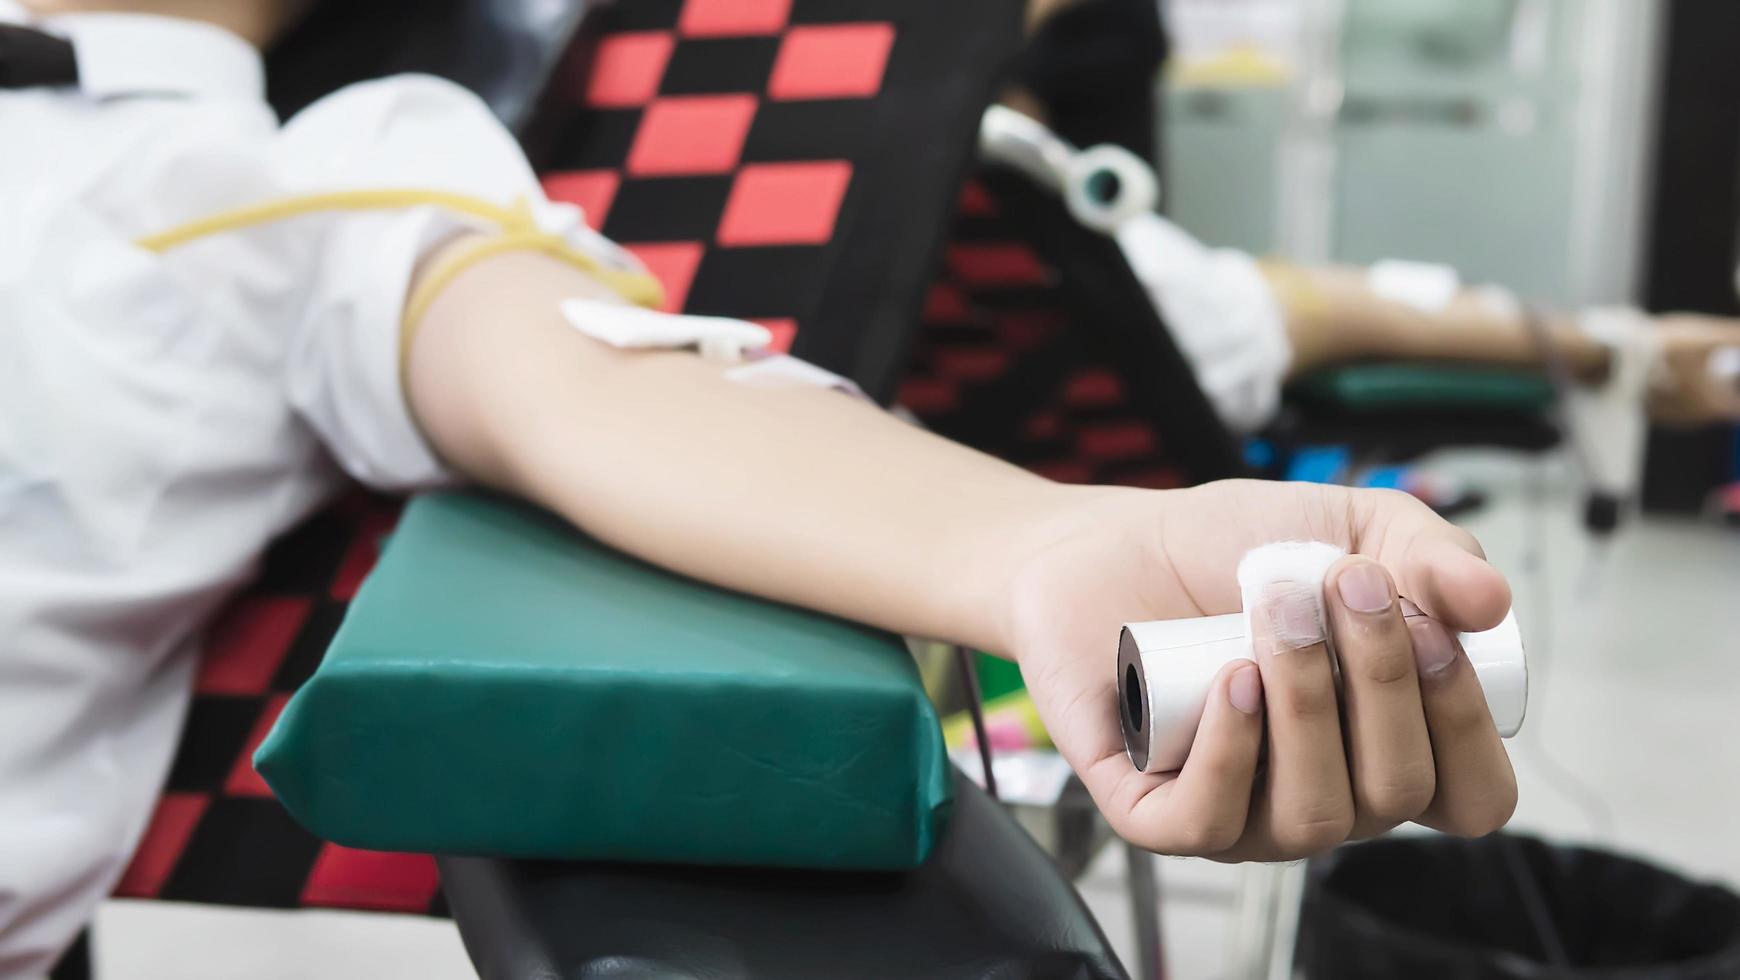 volontär man ger blodgivning för att korsa röd organisation - människor med blodgivningskoncept foto